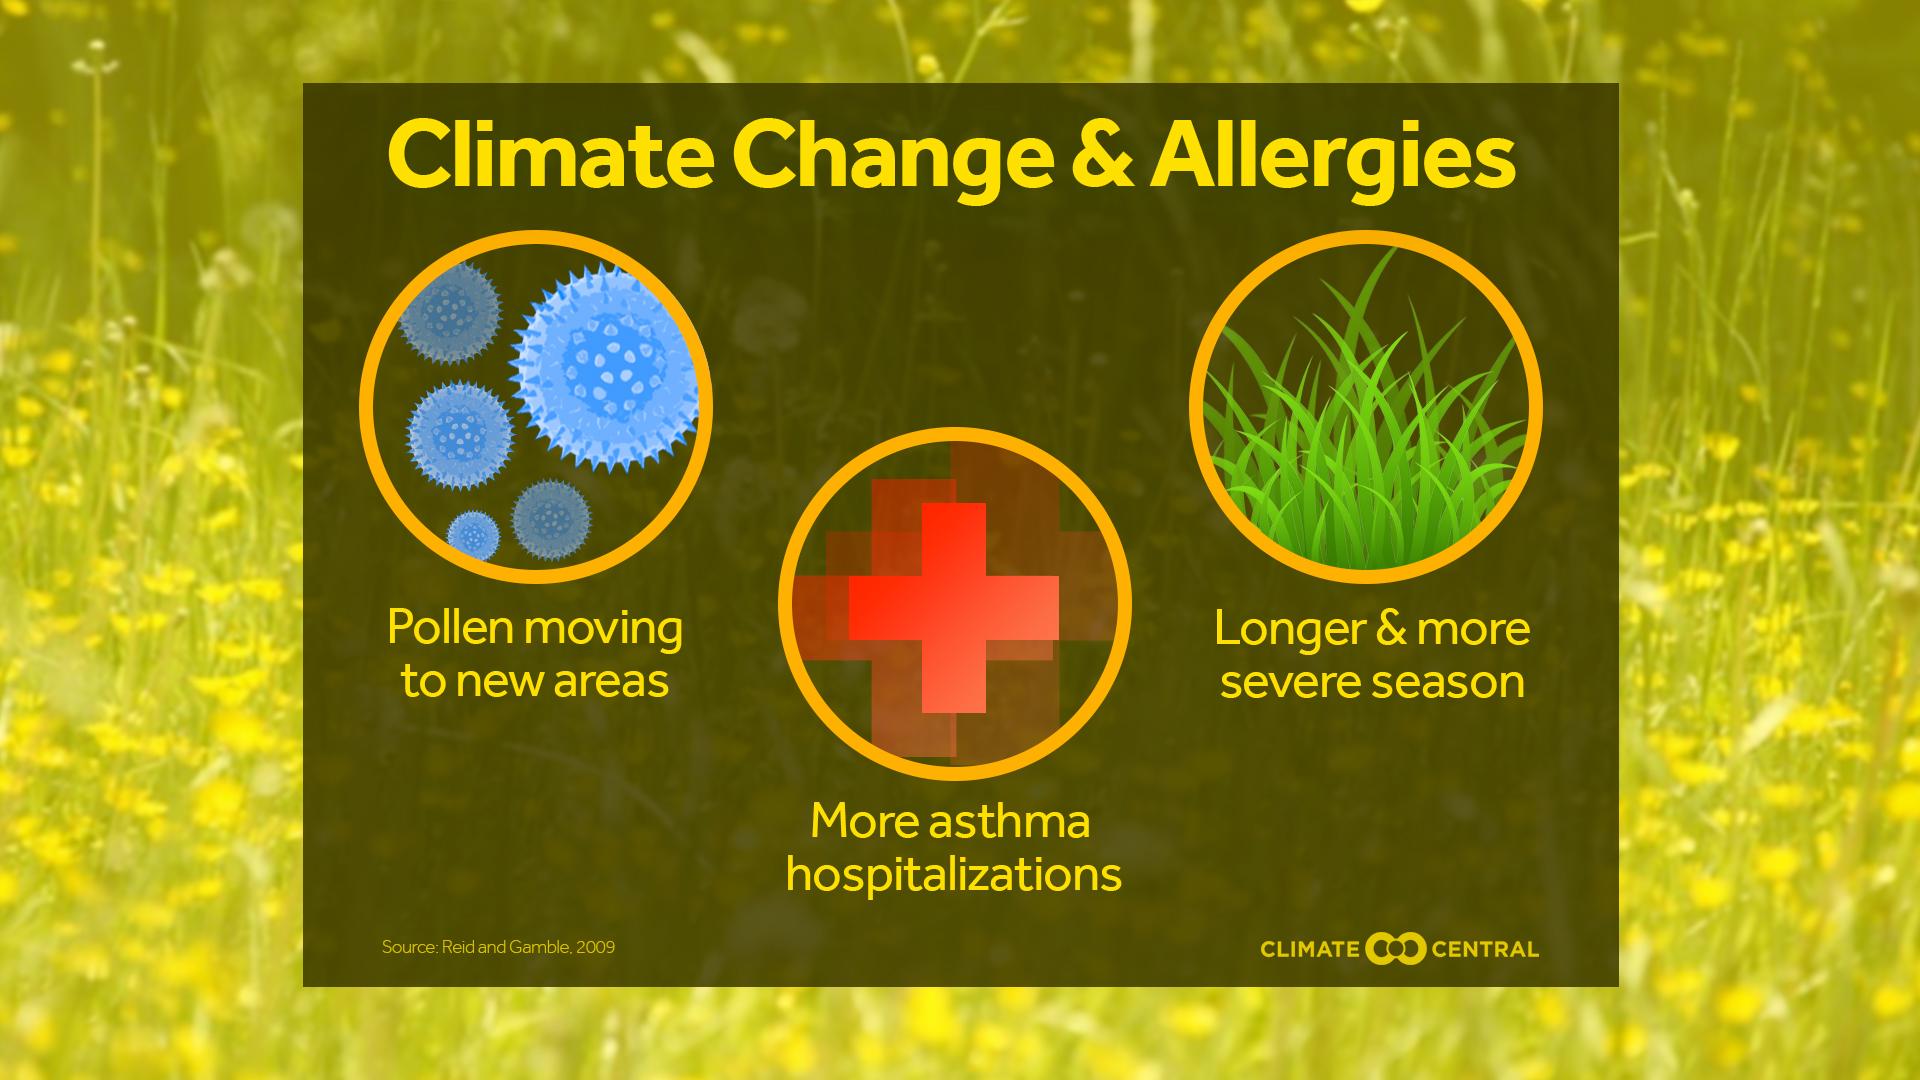 Set 1 - Allergies Ahead (Pollen)